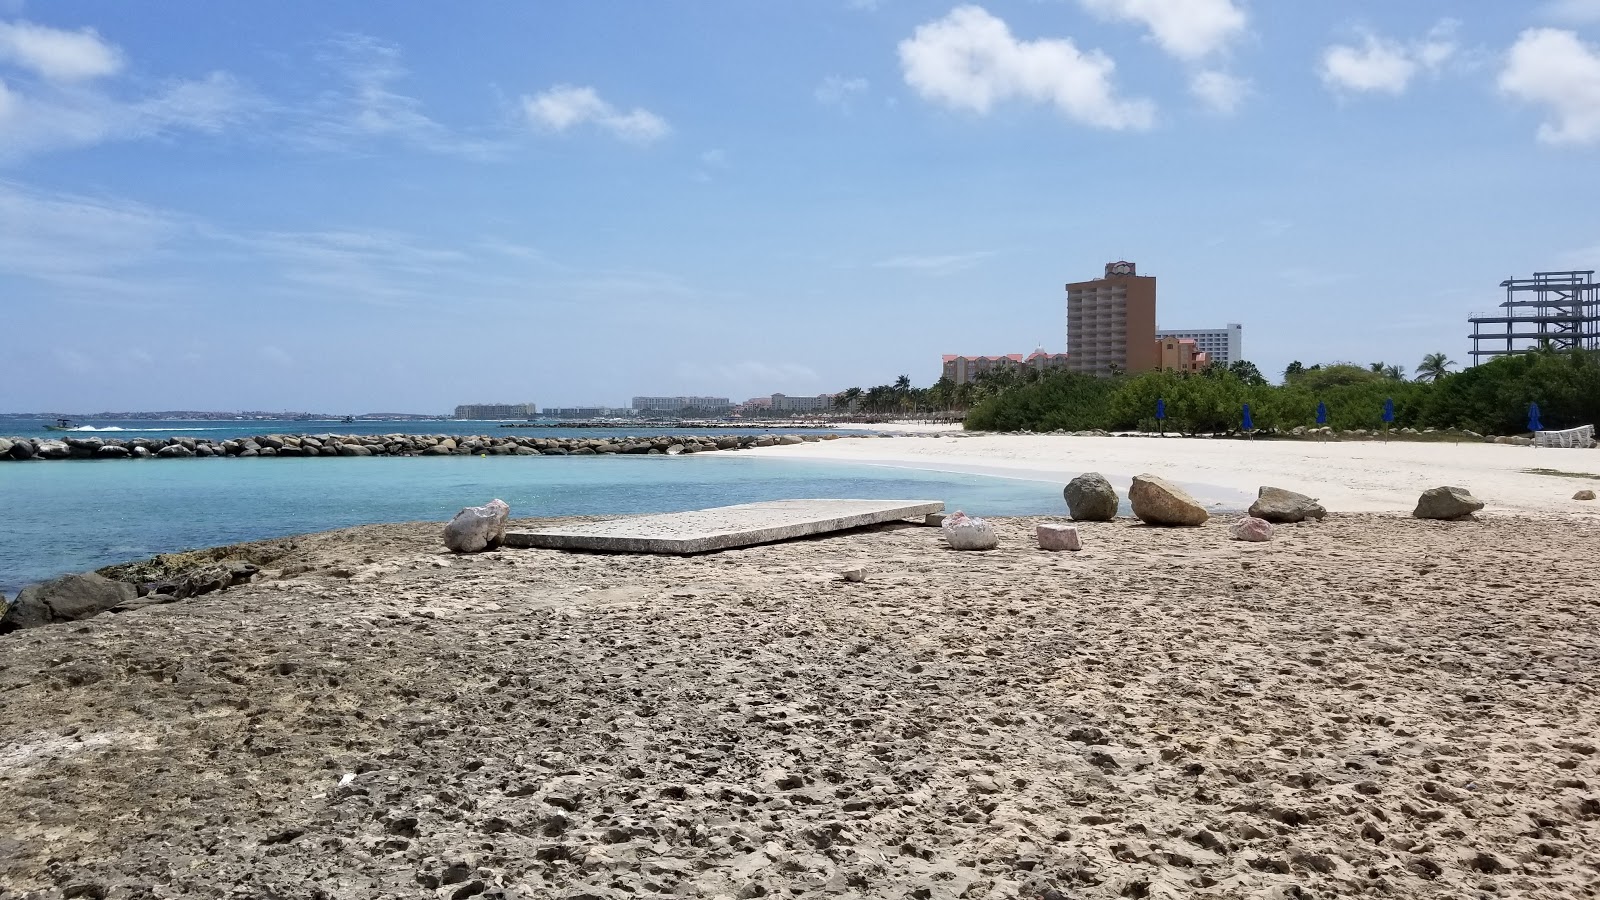 Fotografie cu Blue Residences beach cu o suprafață de nisip gri și roci